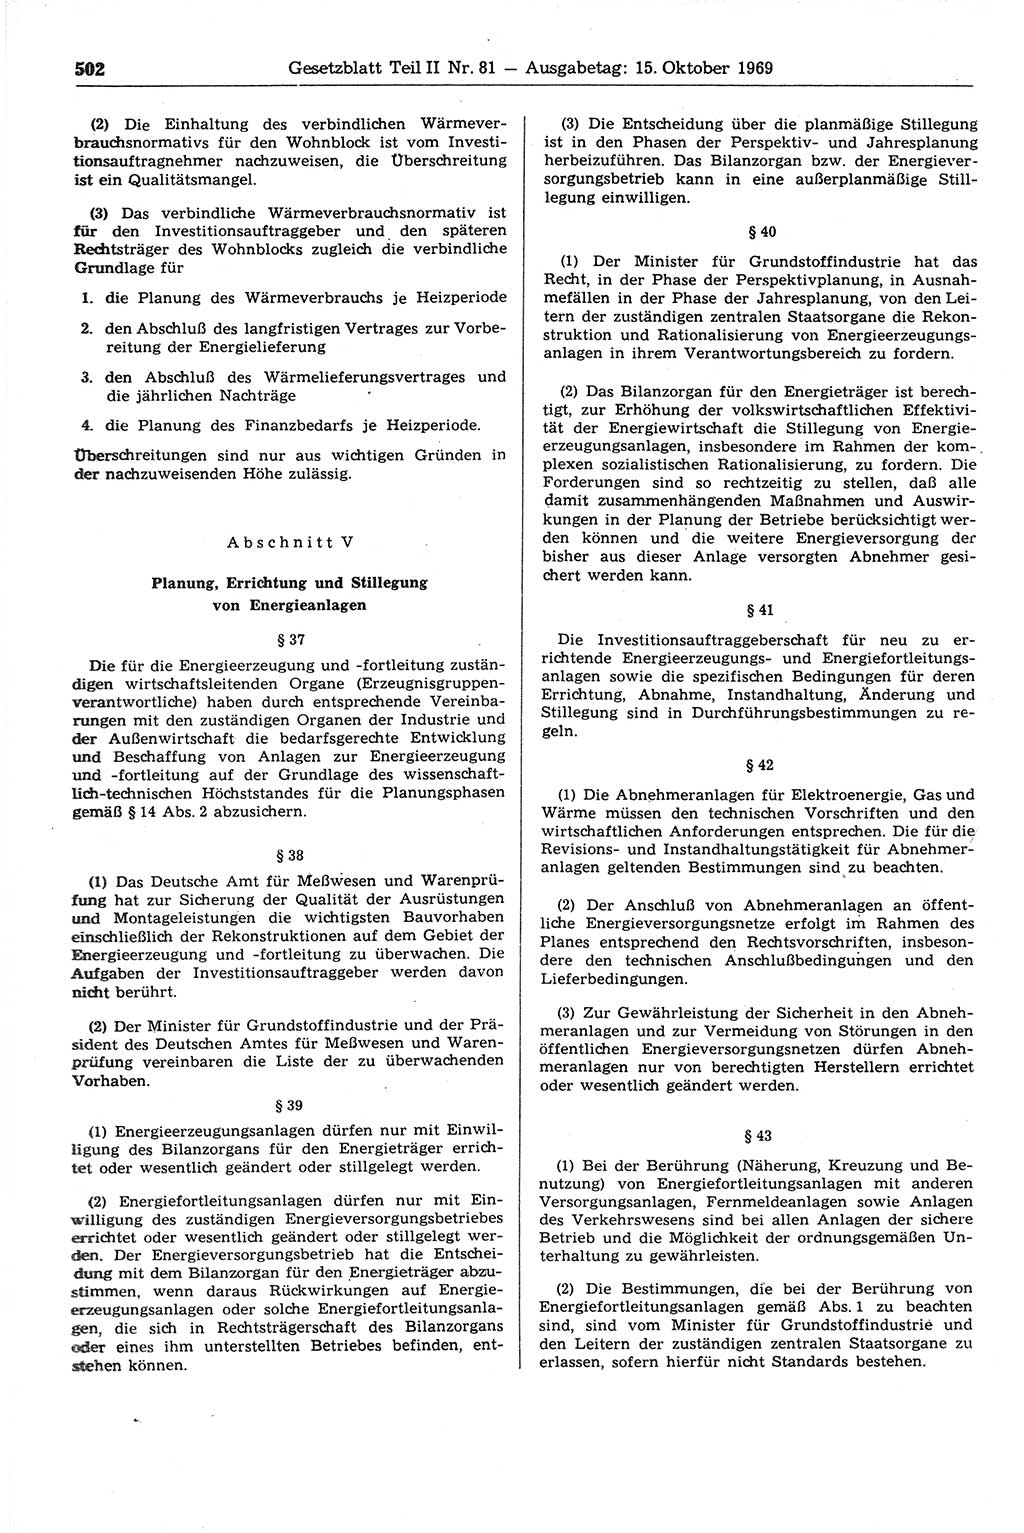 Gesetzblatt (GBl.) der Deutschen Demokratischen Republik (DDR) Teil ⅠⅠ 1969, Seite 502 (GBl. DDR ⅠⅠ 1969, S. 502)